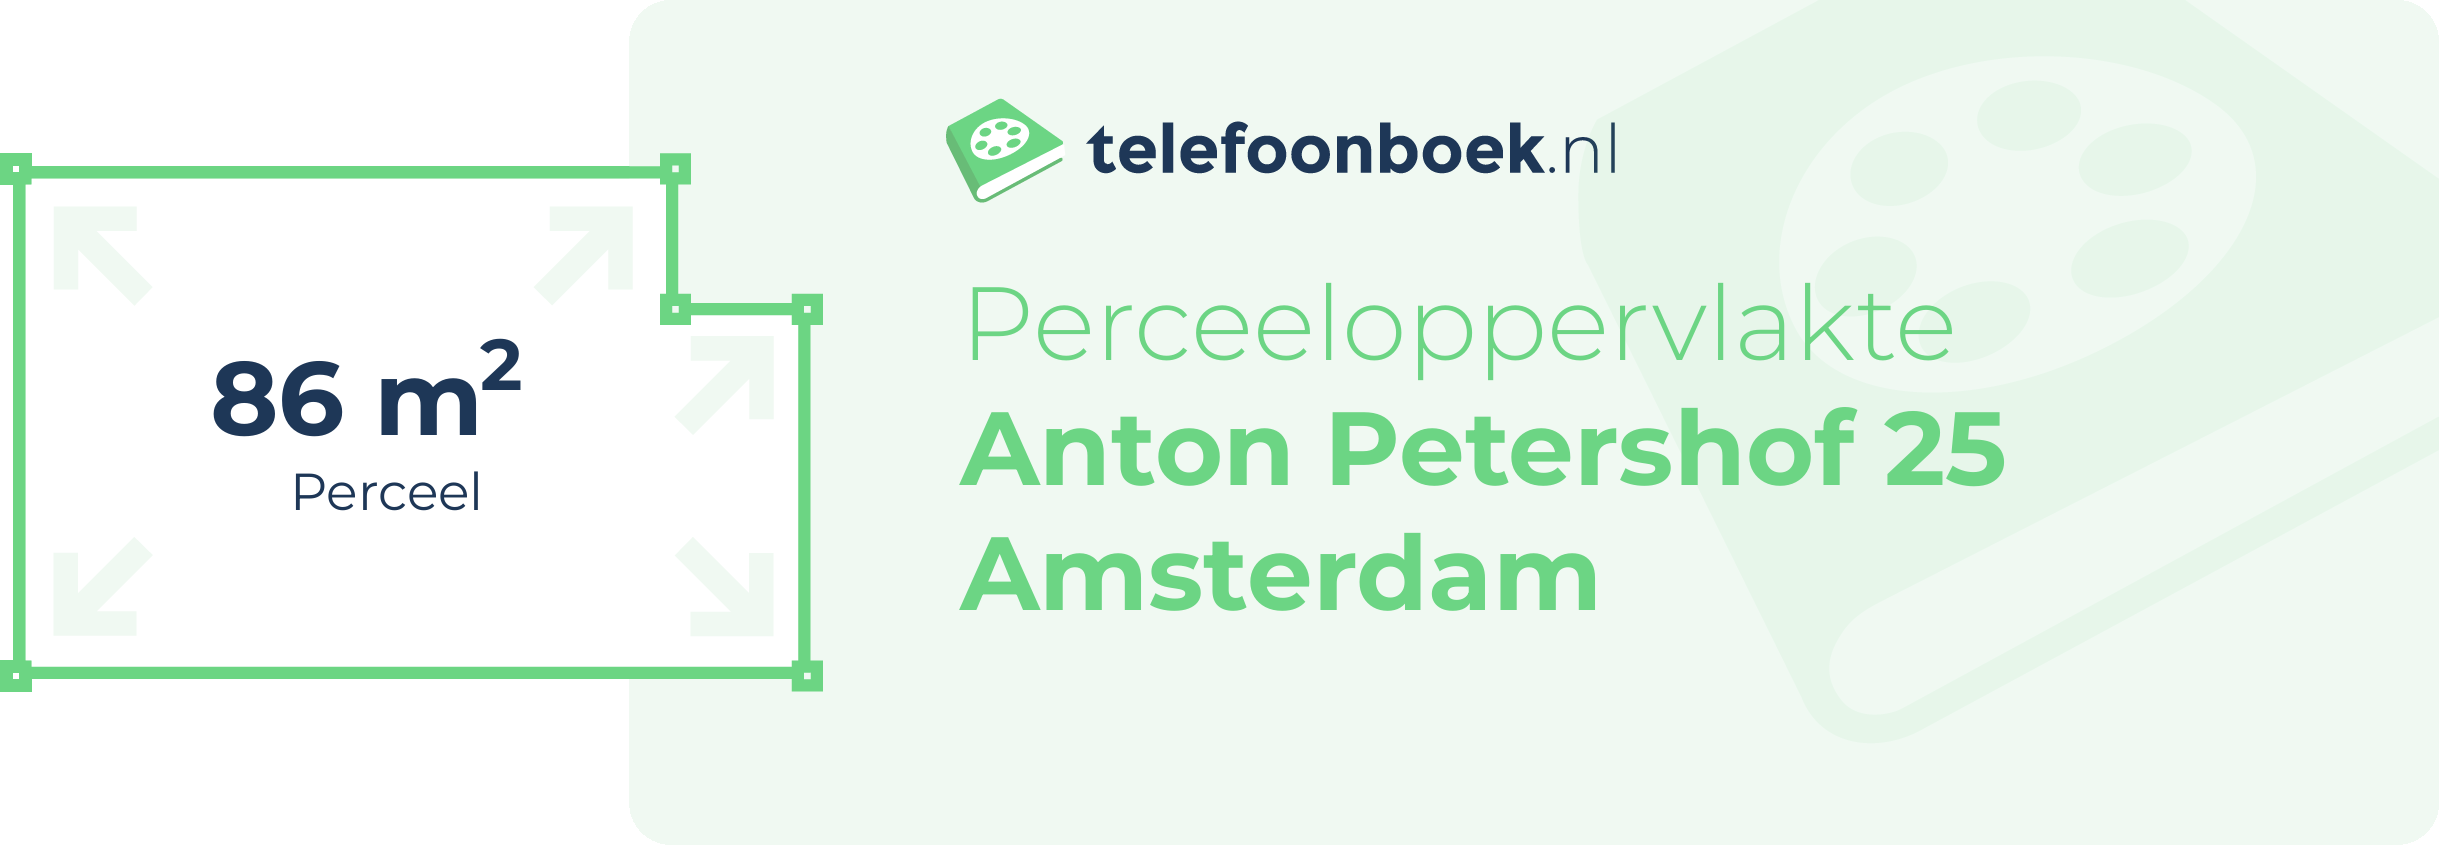 Perceeloppervlakte Anton Petershof 25 Amsterdam